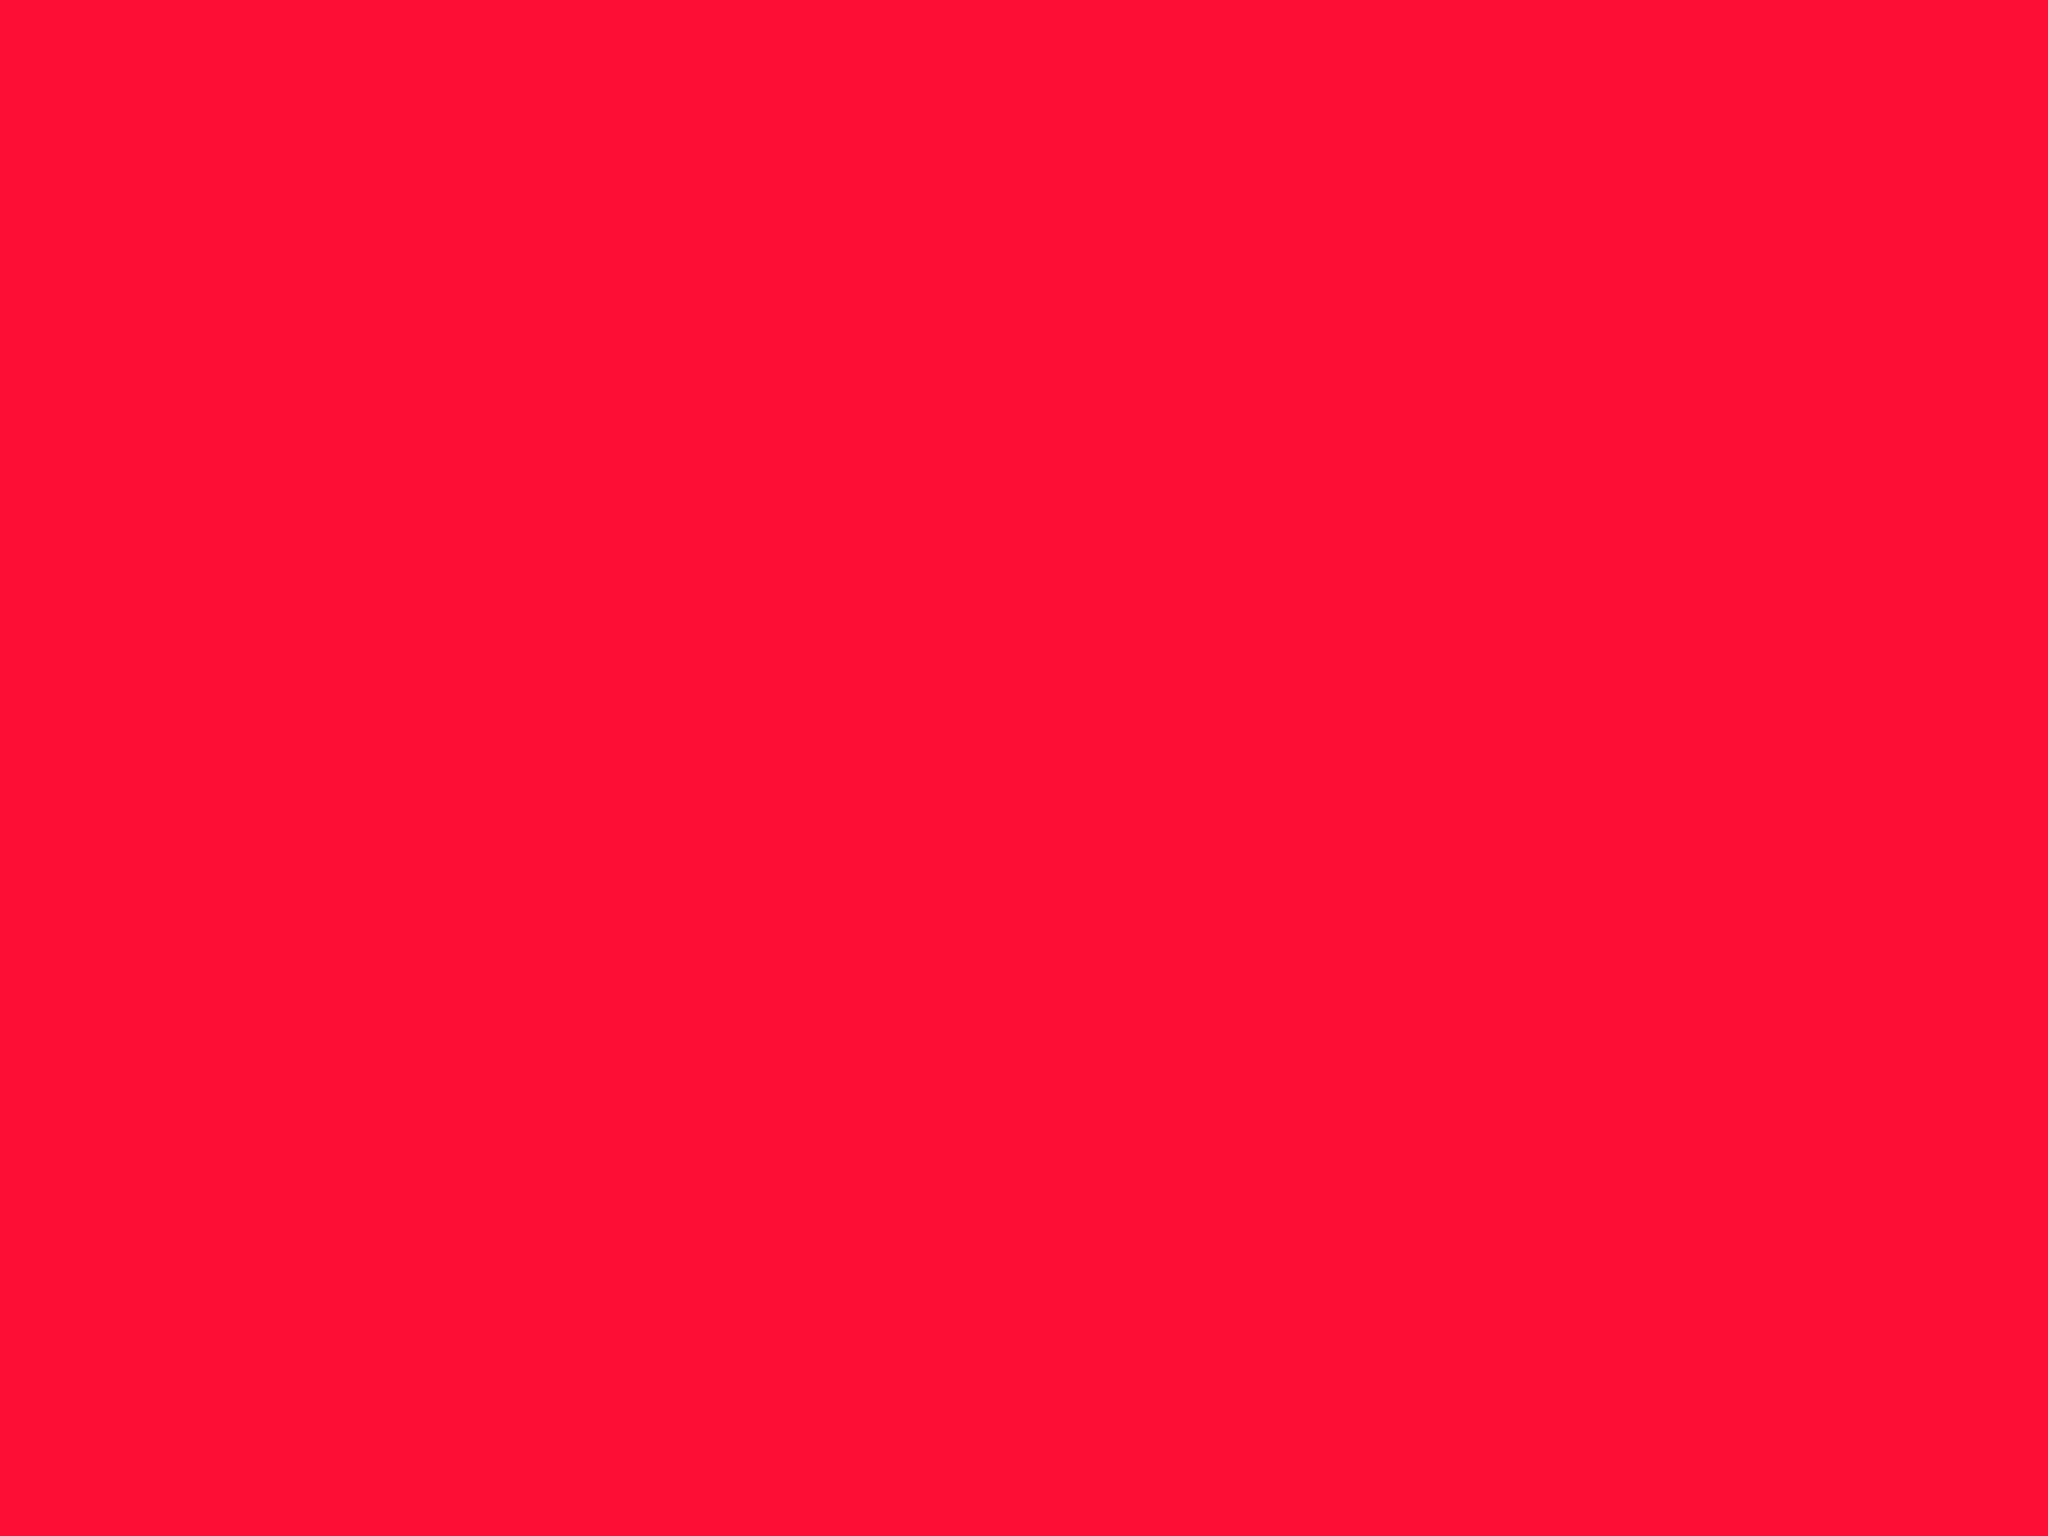 2048x1536 Scarlet Crayola Solid Color Background